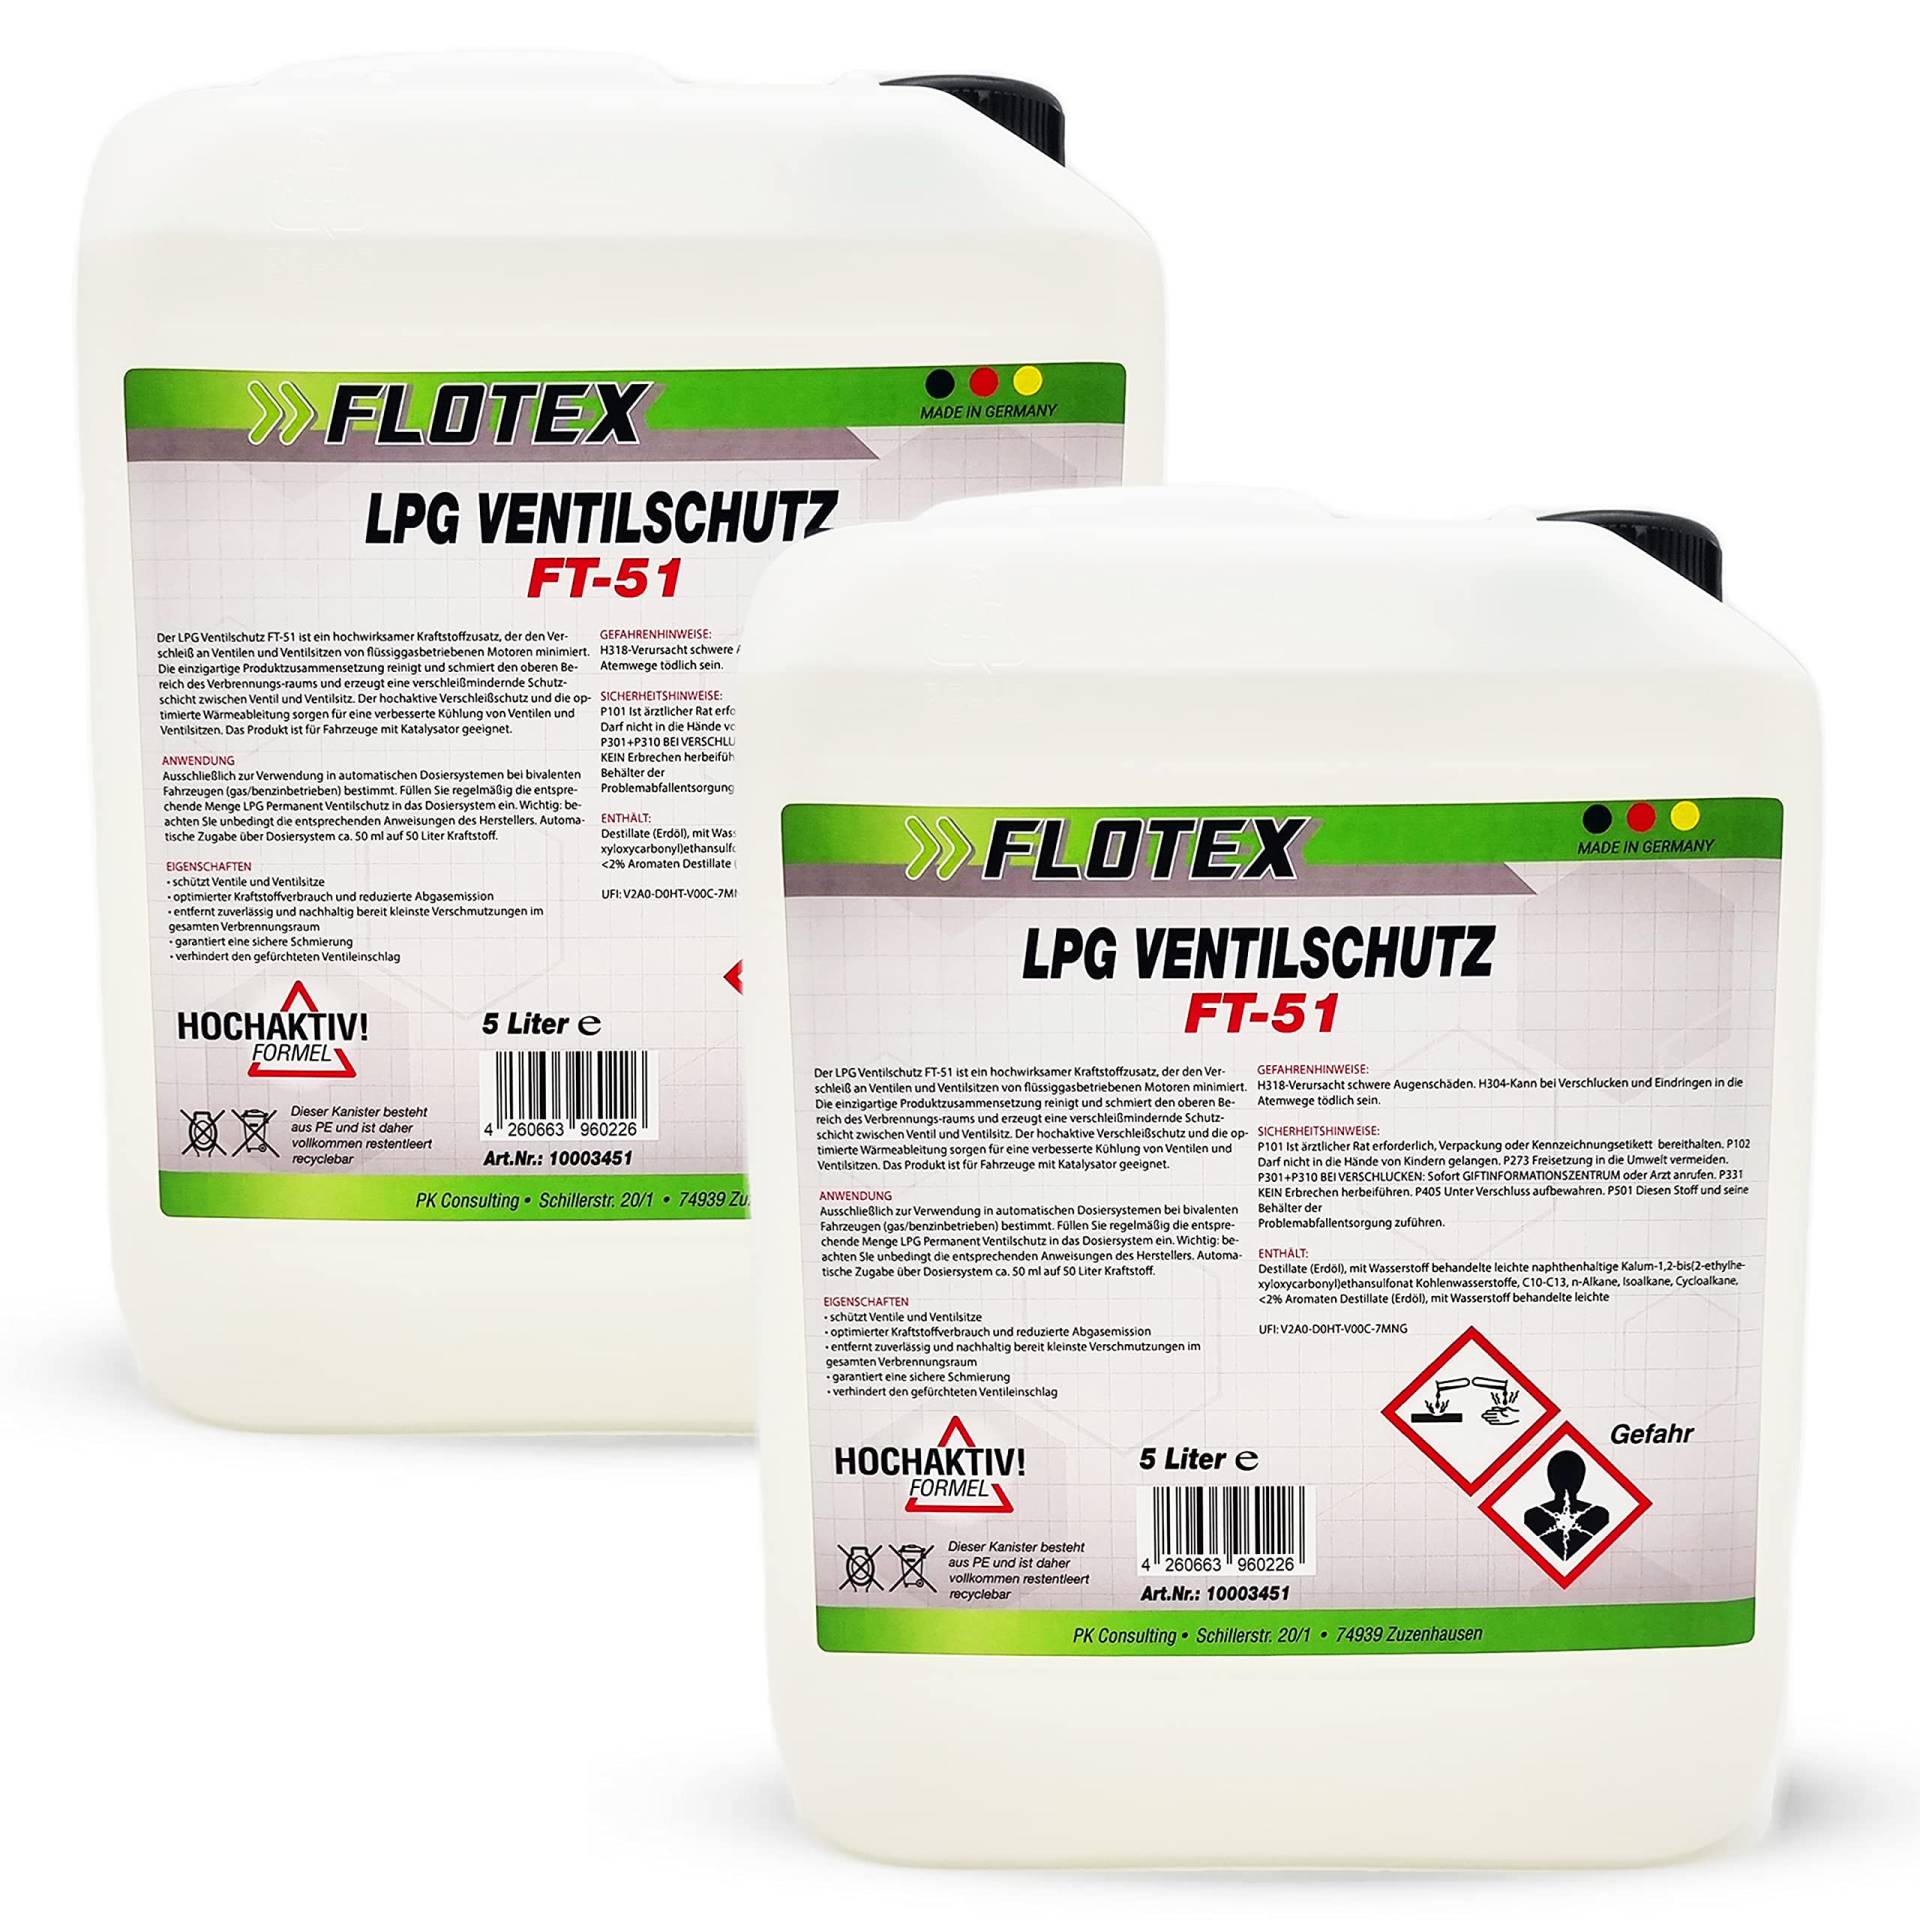 Flotex Permanent LPG Ventilschutz, 2 x 5L Additiv Gas Ventil Schutz von Flotex